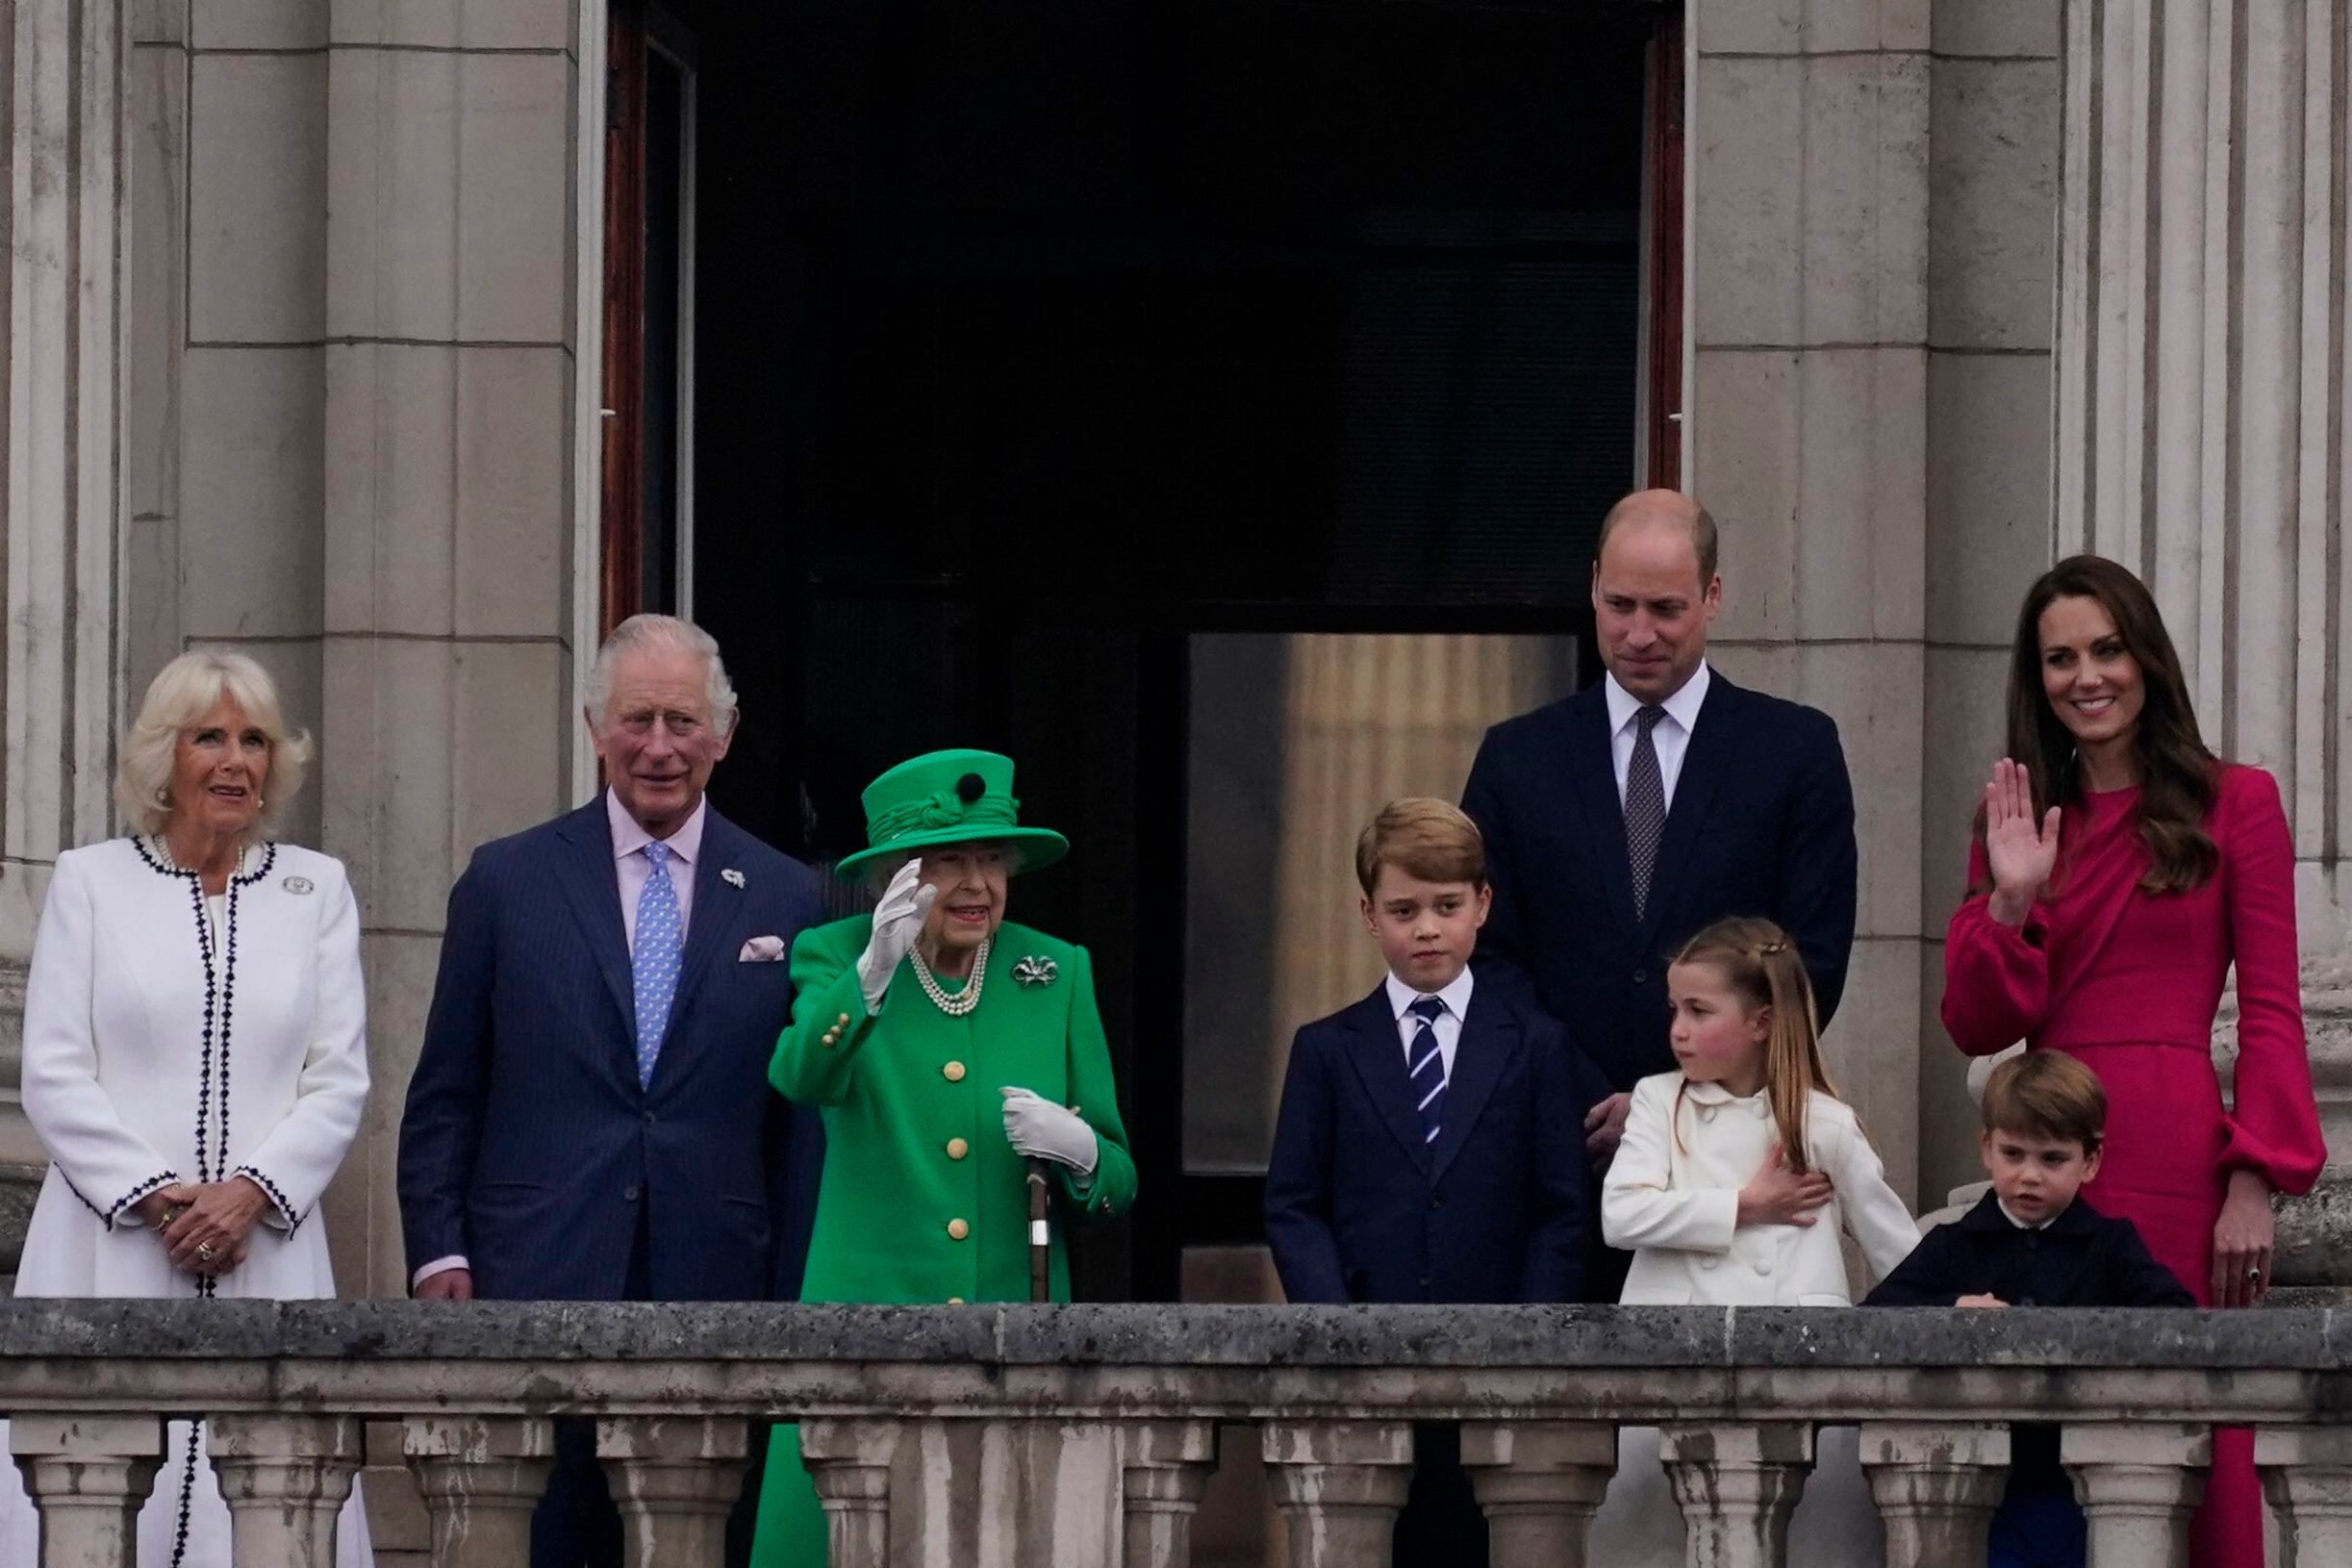 La reina Isabel II de Gran Bretaña (3ra L) saluda a la multitud mientras está de pie en el balcón del Palacio de Buckingham con (De izquierda a derecha) Camilla de Gran Bretaña, Duquesa de Cornualles, Príncipe Carlos de Gran Bretaña, Príncipe de Gales, Príncipe George de Cambridge de Gran Bretaña, Príncipe William de Gran Bretaña, Duque of Cambridge, la princesa Charlotte de Cambridge de Gran Bretaña, Catherine, duquesa de Cambridge de Gran Bretaña y el príncipe Louis de Cambridge de Gran Bretaña al final del concurso de platino en Londres el 5 de junio de 2022 como parte de las celebraciones del jubileo de platino de la reina Isabel II. (Foto de Alberto Pezzali / PISCINA / AFP)